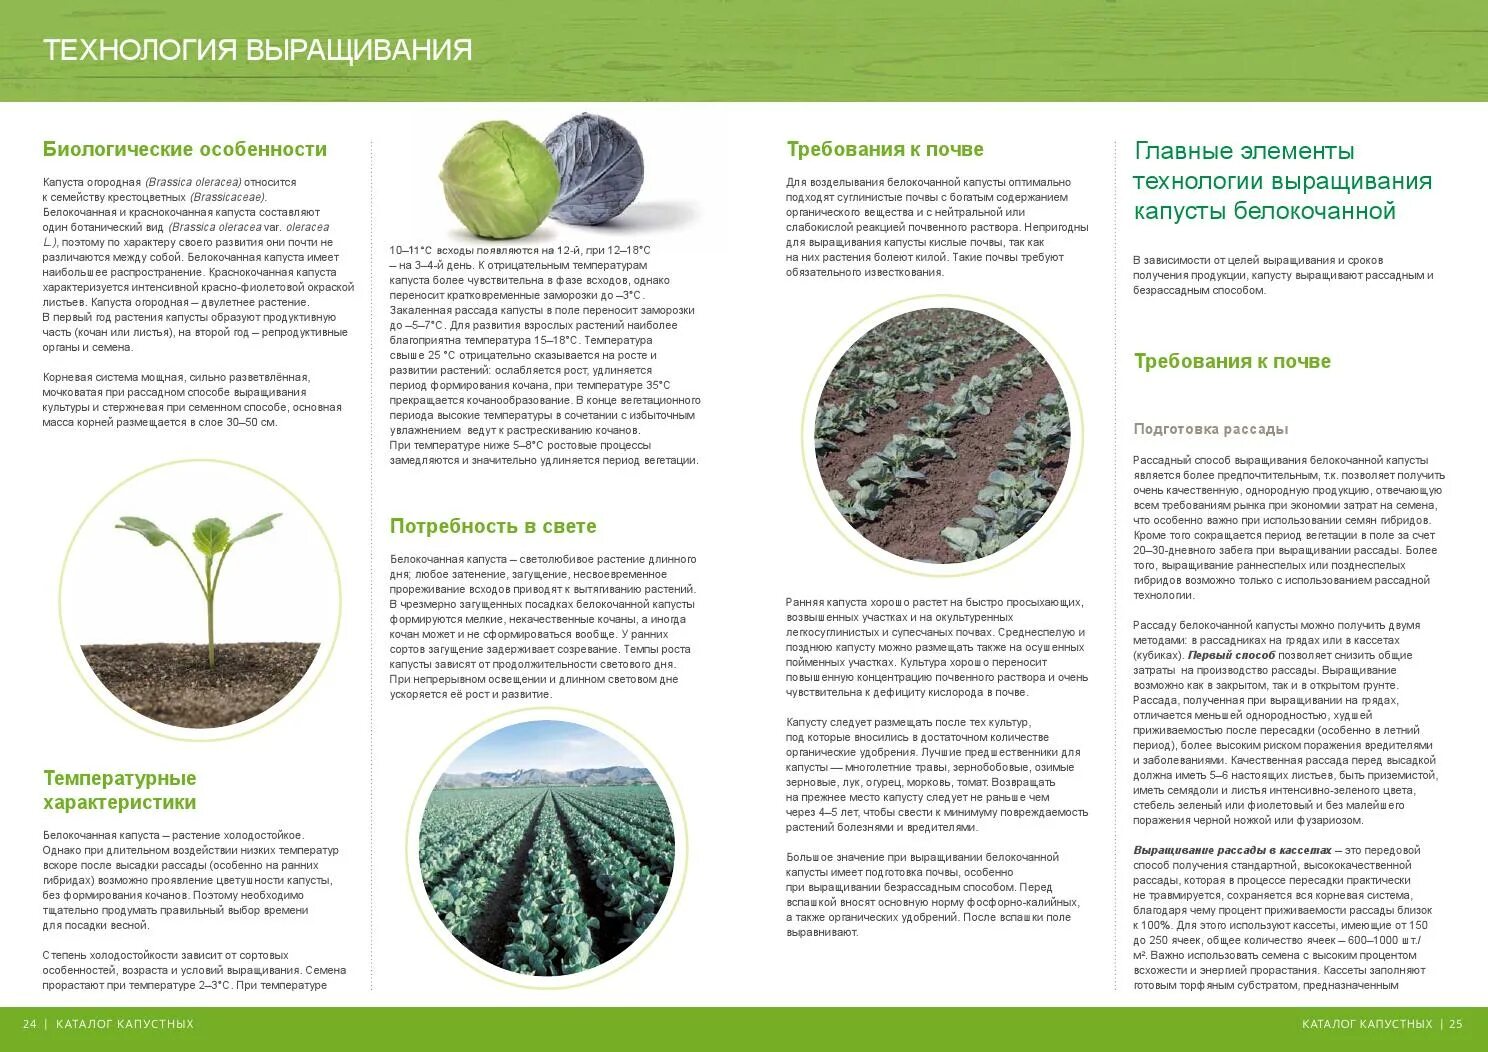 При какой температуре выращивать капусту. Технология выращивания белокочанной капусты кратко. Возделывание белокочанной капусты технология возделывания. Технология возделывания капусты белокочанной кратко. Технология выращивания рассады капусты.